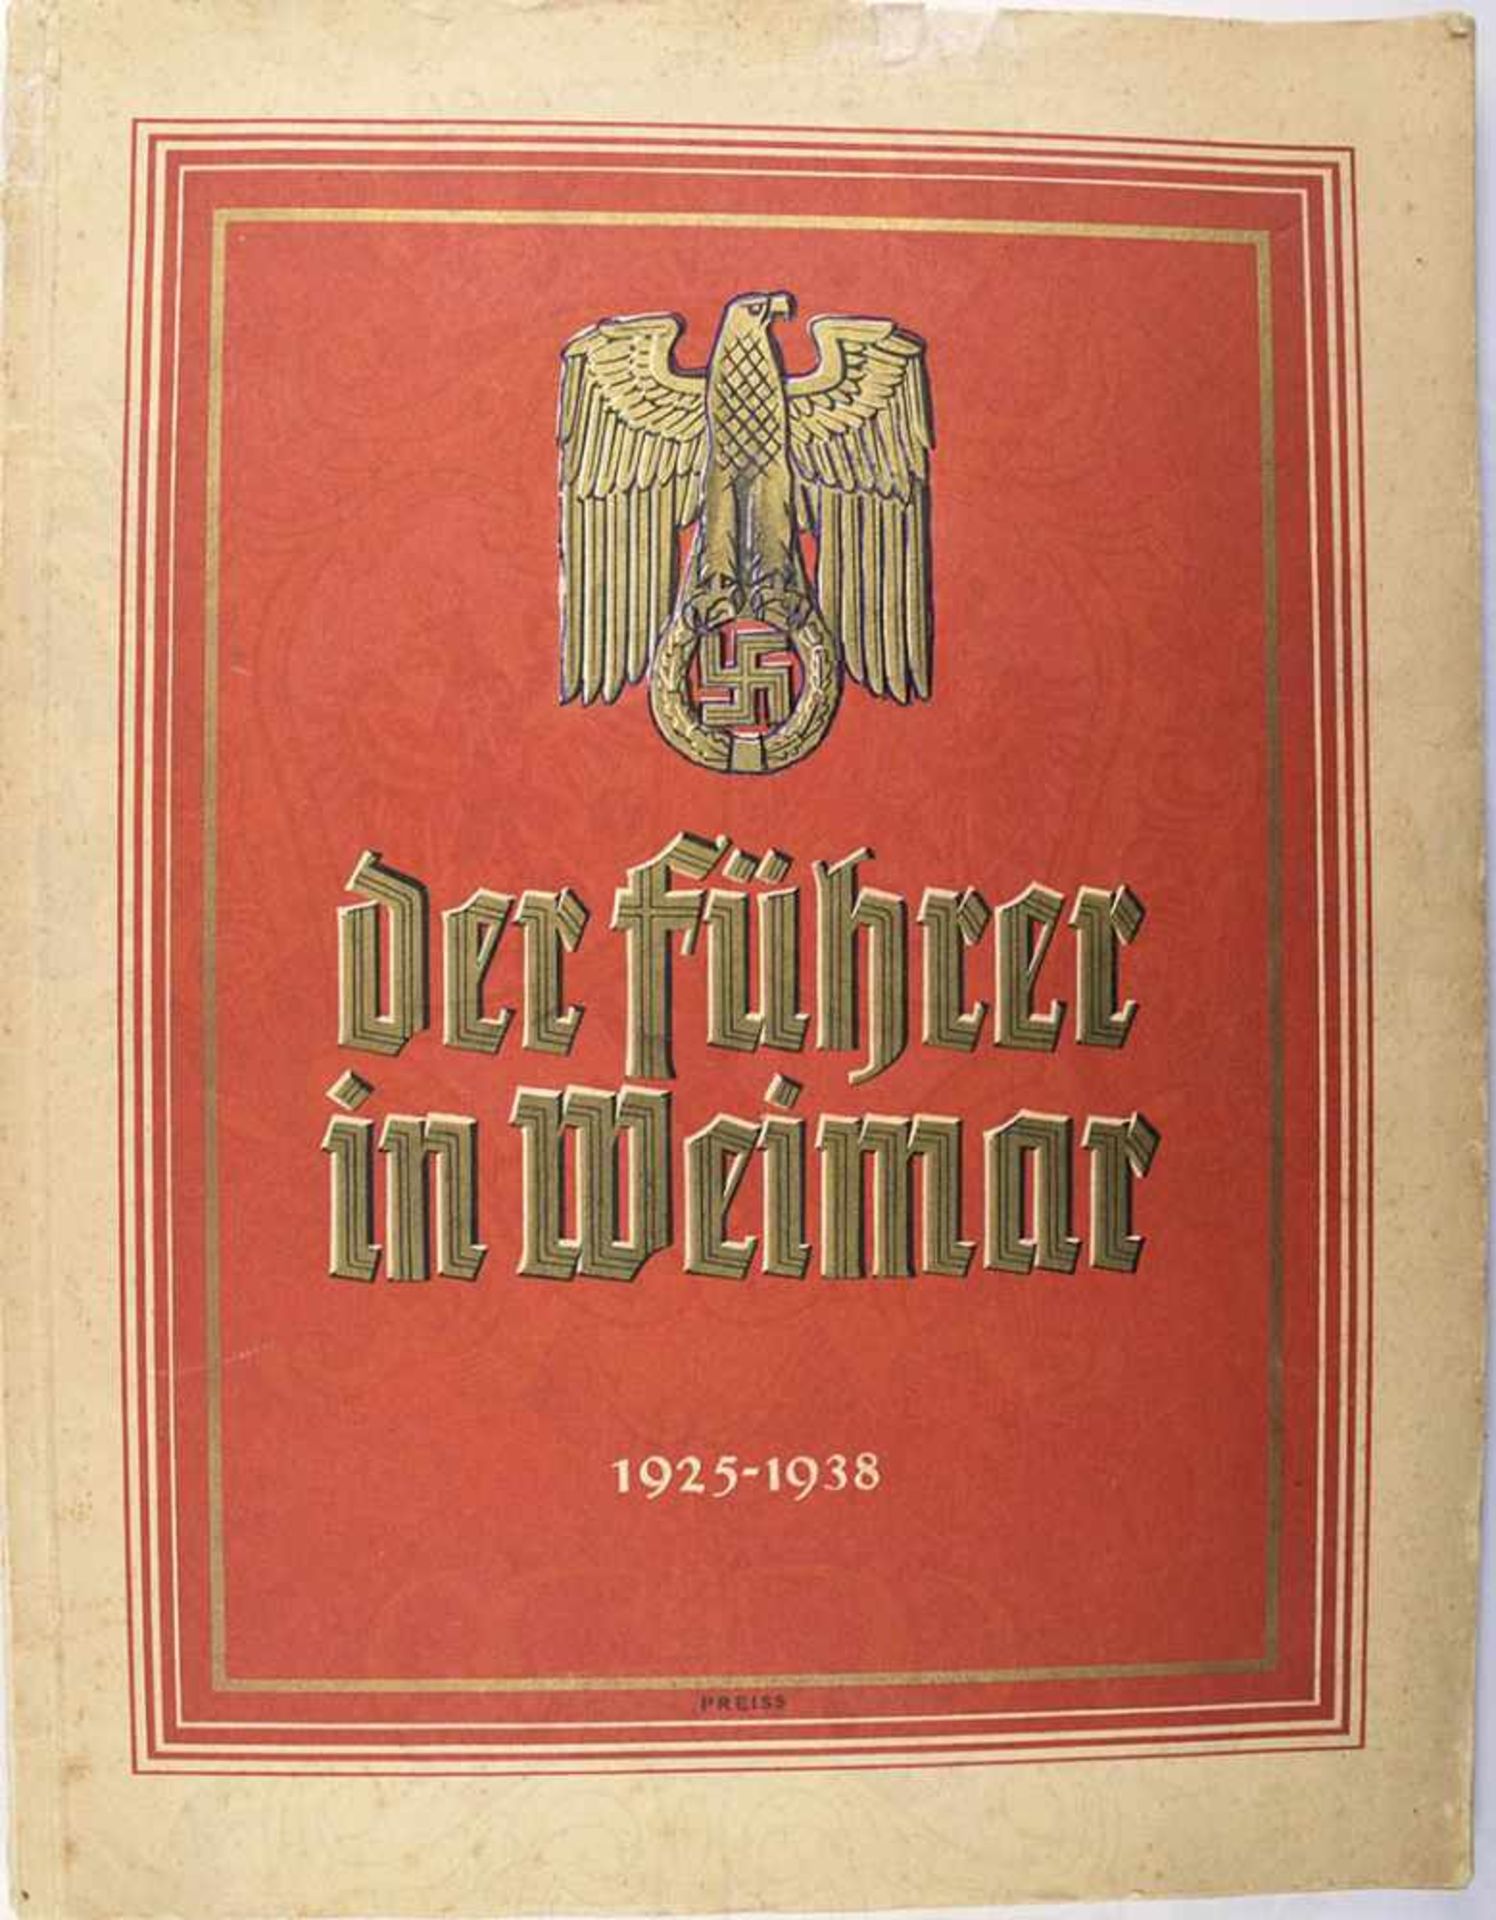 DER FÜHRER IN WEIMAR 1925-1938, Fritz Sauckel, Weimar 1938, 84 S., zahlr. tls. farb. Abb., dabei die